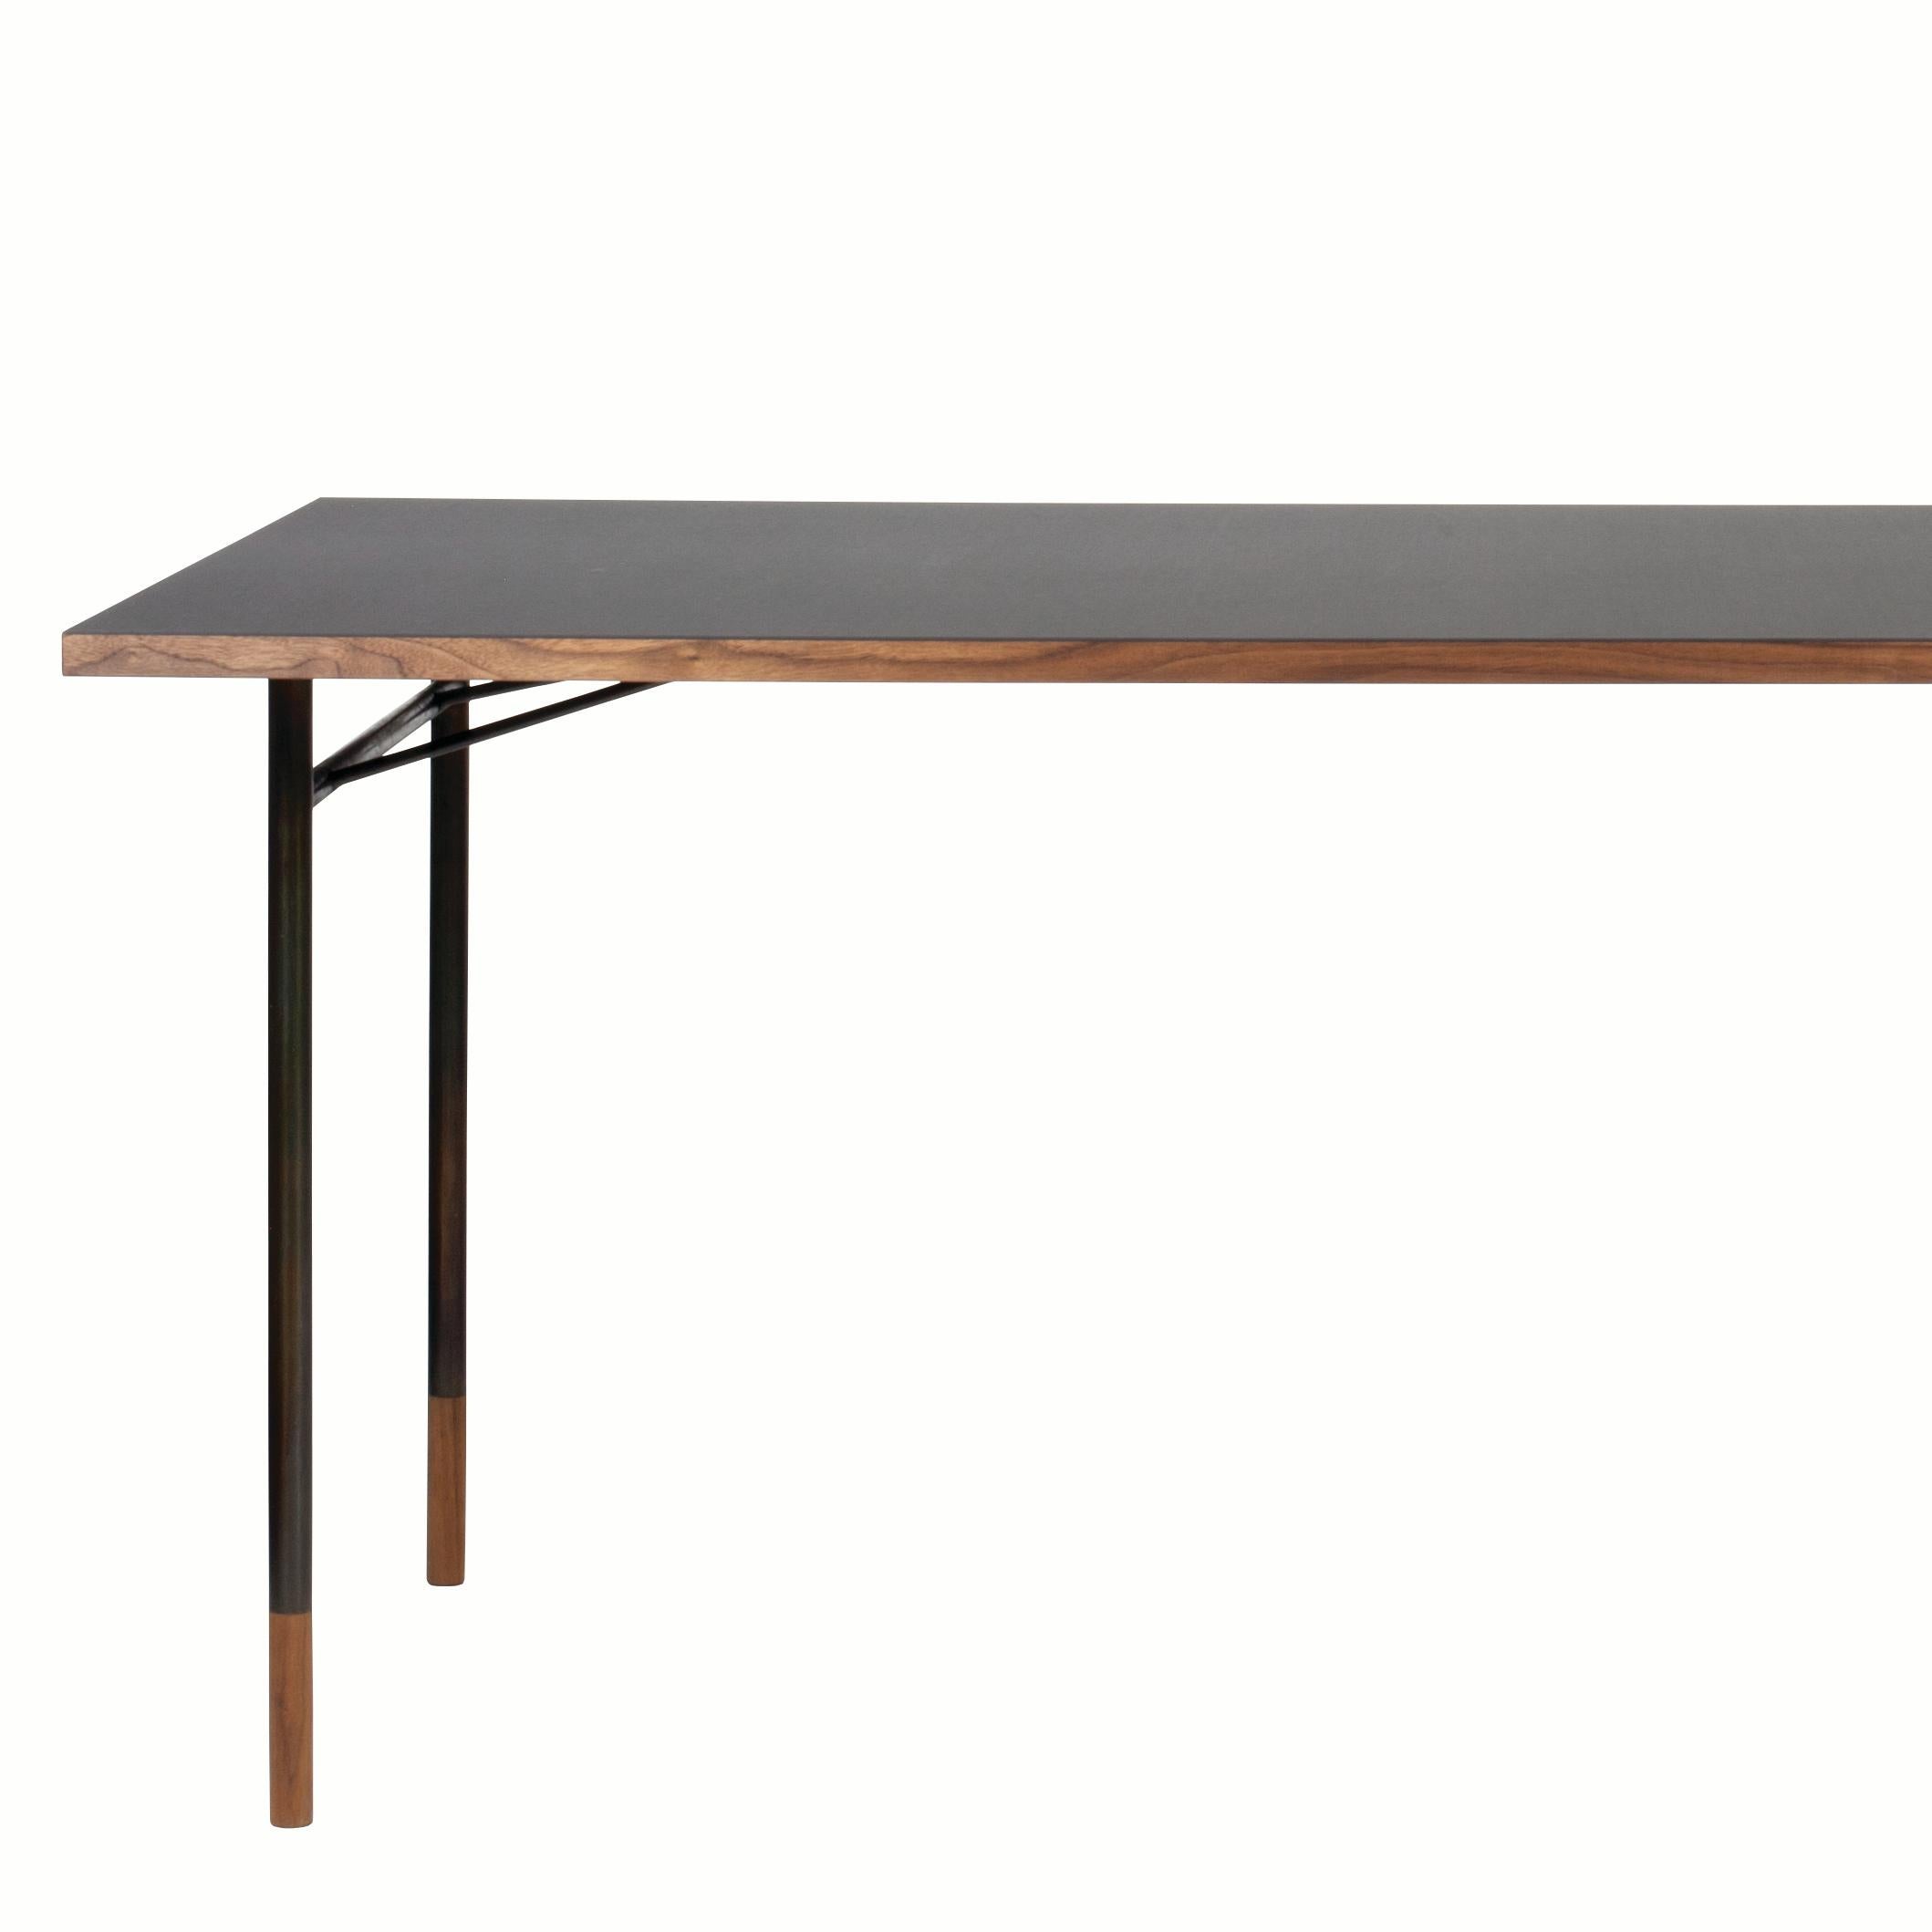 1945 von Finn Juhl entworfener Tisch, der 2009 neu aufgelegt wurde. Hergestellt von House of Finn Juhls in Dänemark.

Finn Juhl entwarf im Laufe seiner Karriere eine Reihe verschiedener Tische mit fast unsichtbaren Beinen aus brüniertem oder